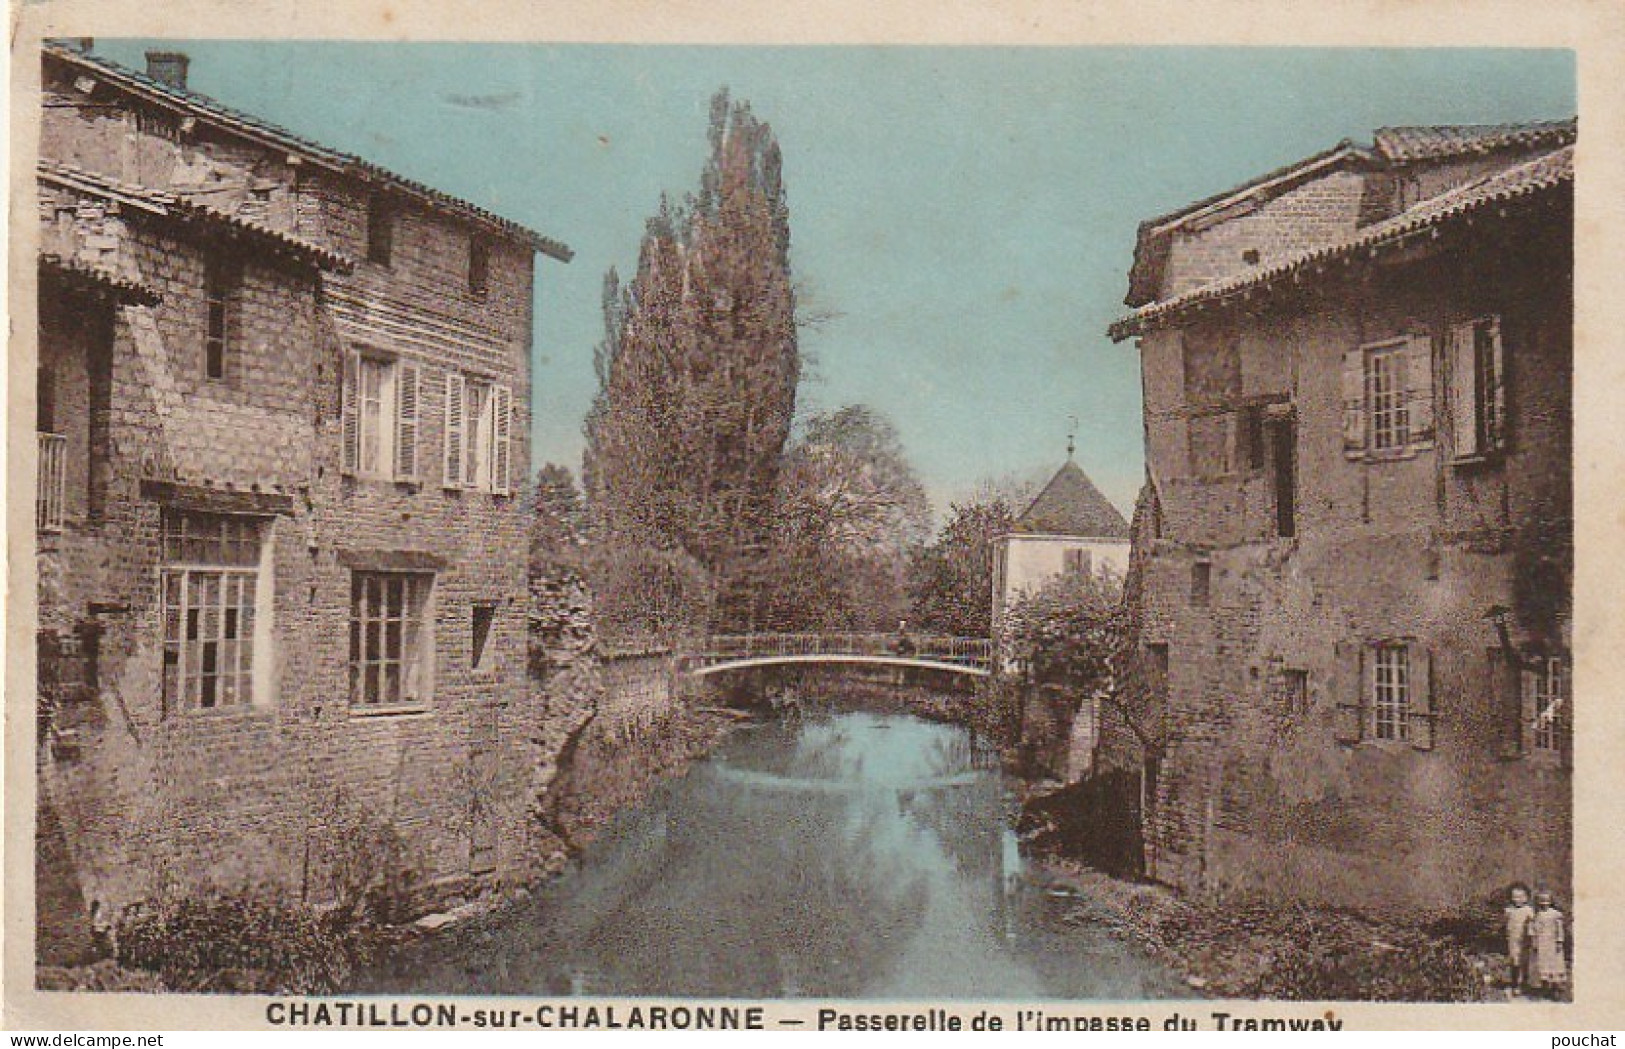 WA 6-(01) CHATILLON SUR CHALARONNE - PASSERELLE DE L' IMPASSE DU TRAMWAY - CARTE COLORISEE  - 2 SCANS - Châtillon-sur-Chalaronne